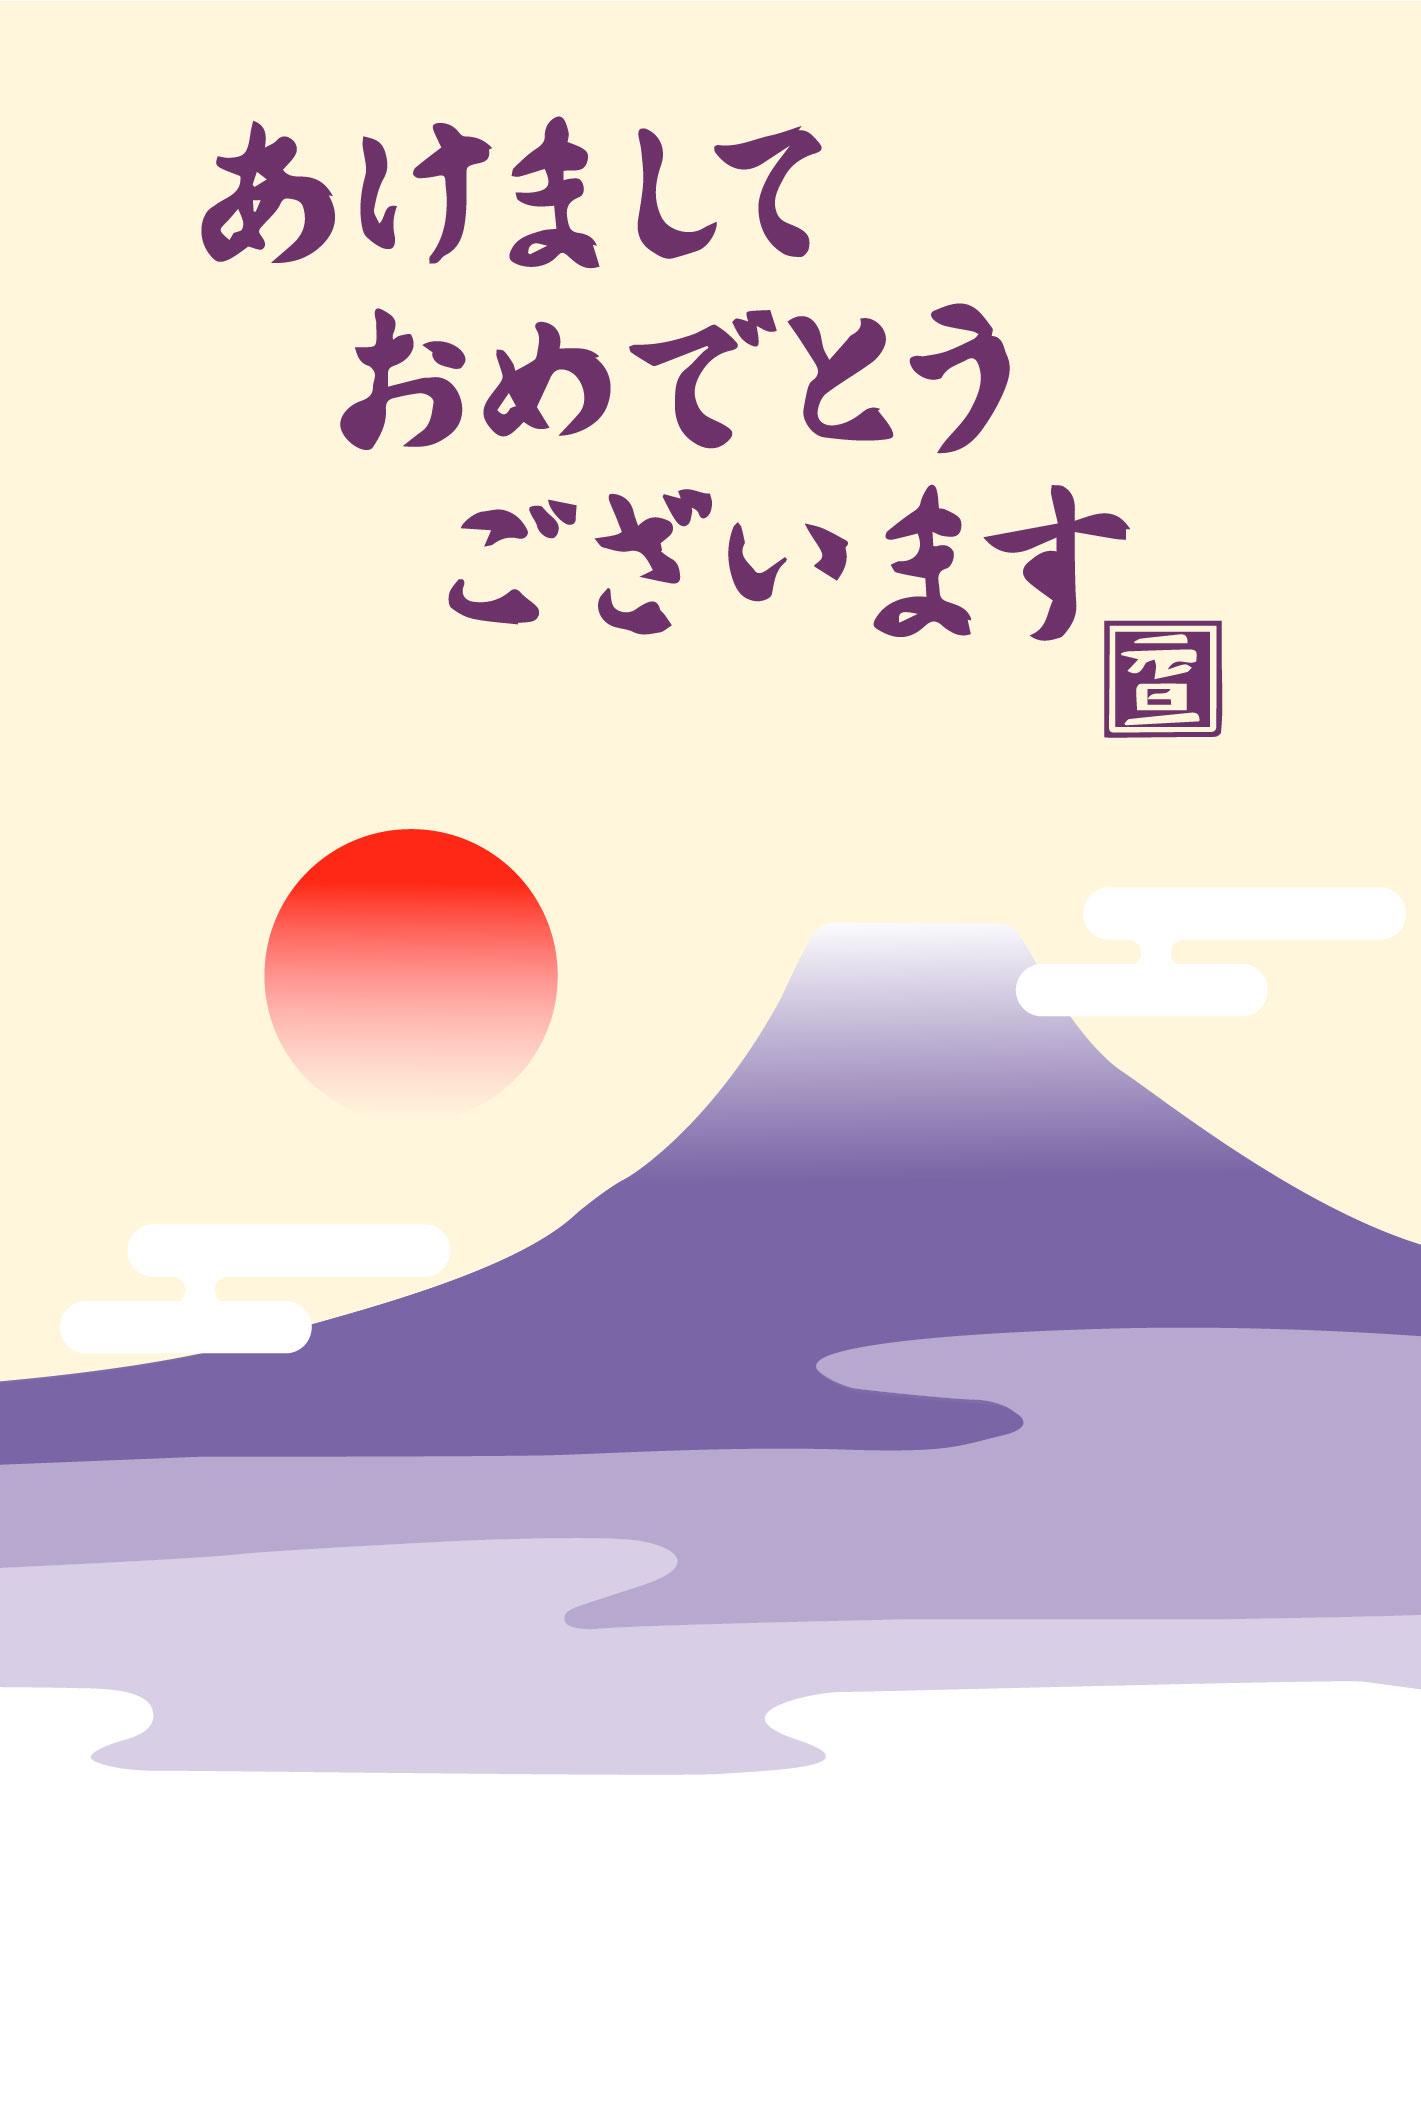 あけましておめでとうございます 紫富士山と初日の出のイラスト年賀状無料イラスト素材です 企業 ブランド等のロゴ をillustrator Ai Eps形式 でトレース 無料ダウンロード